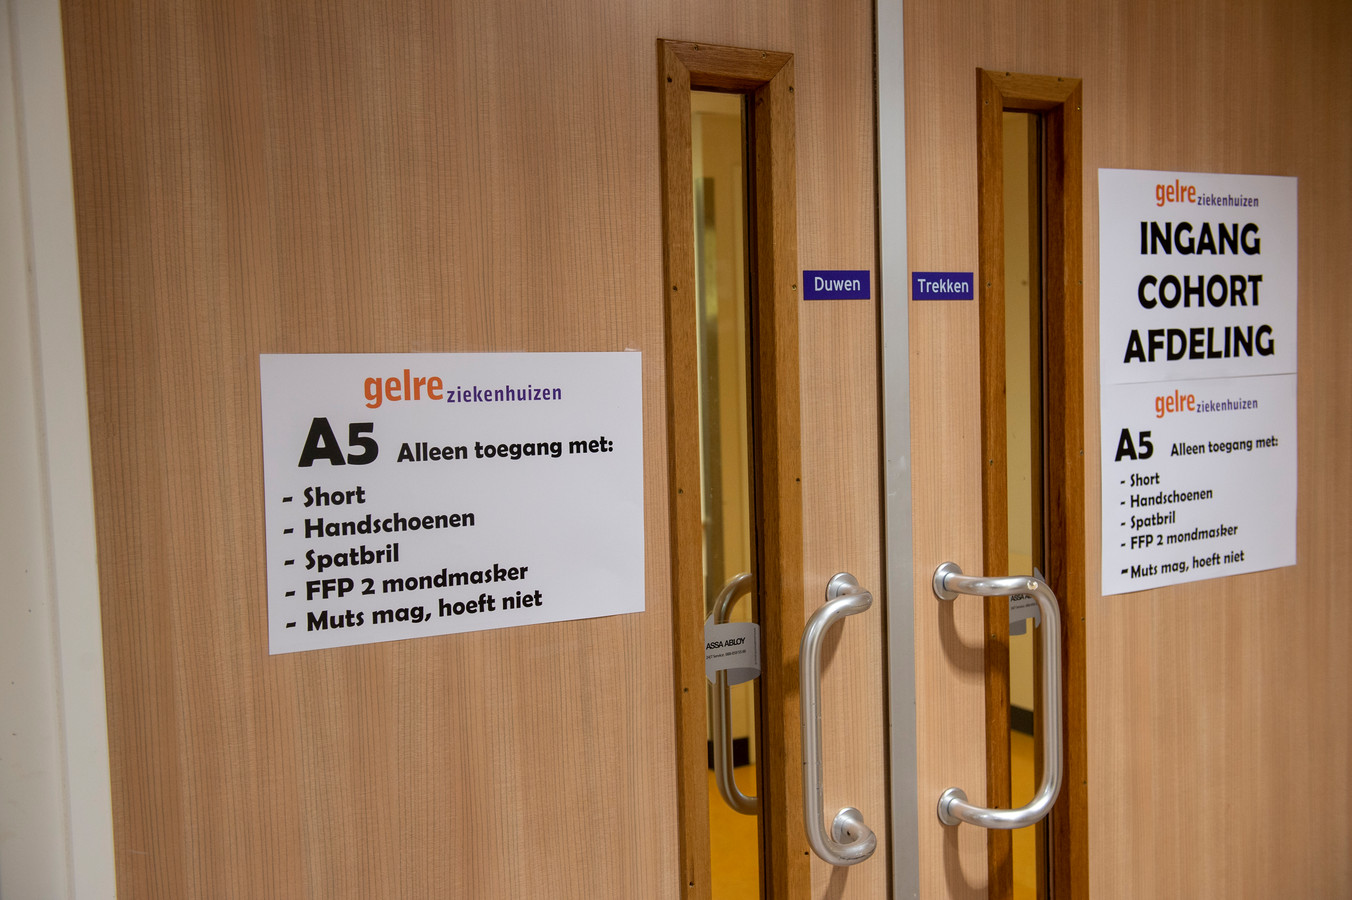 Sinds afgelopen week merkt ook Gelre ziekenhuizen een stijging van het aantal coronapatiënten in Apeldoorn en Zutphen.